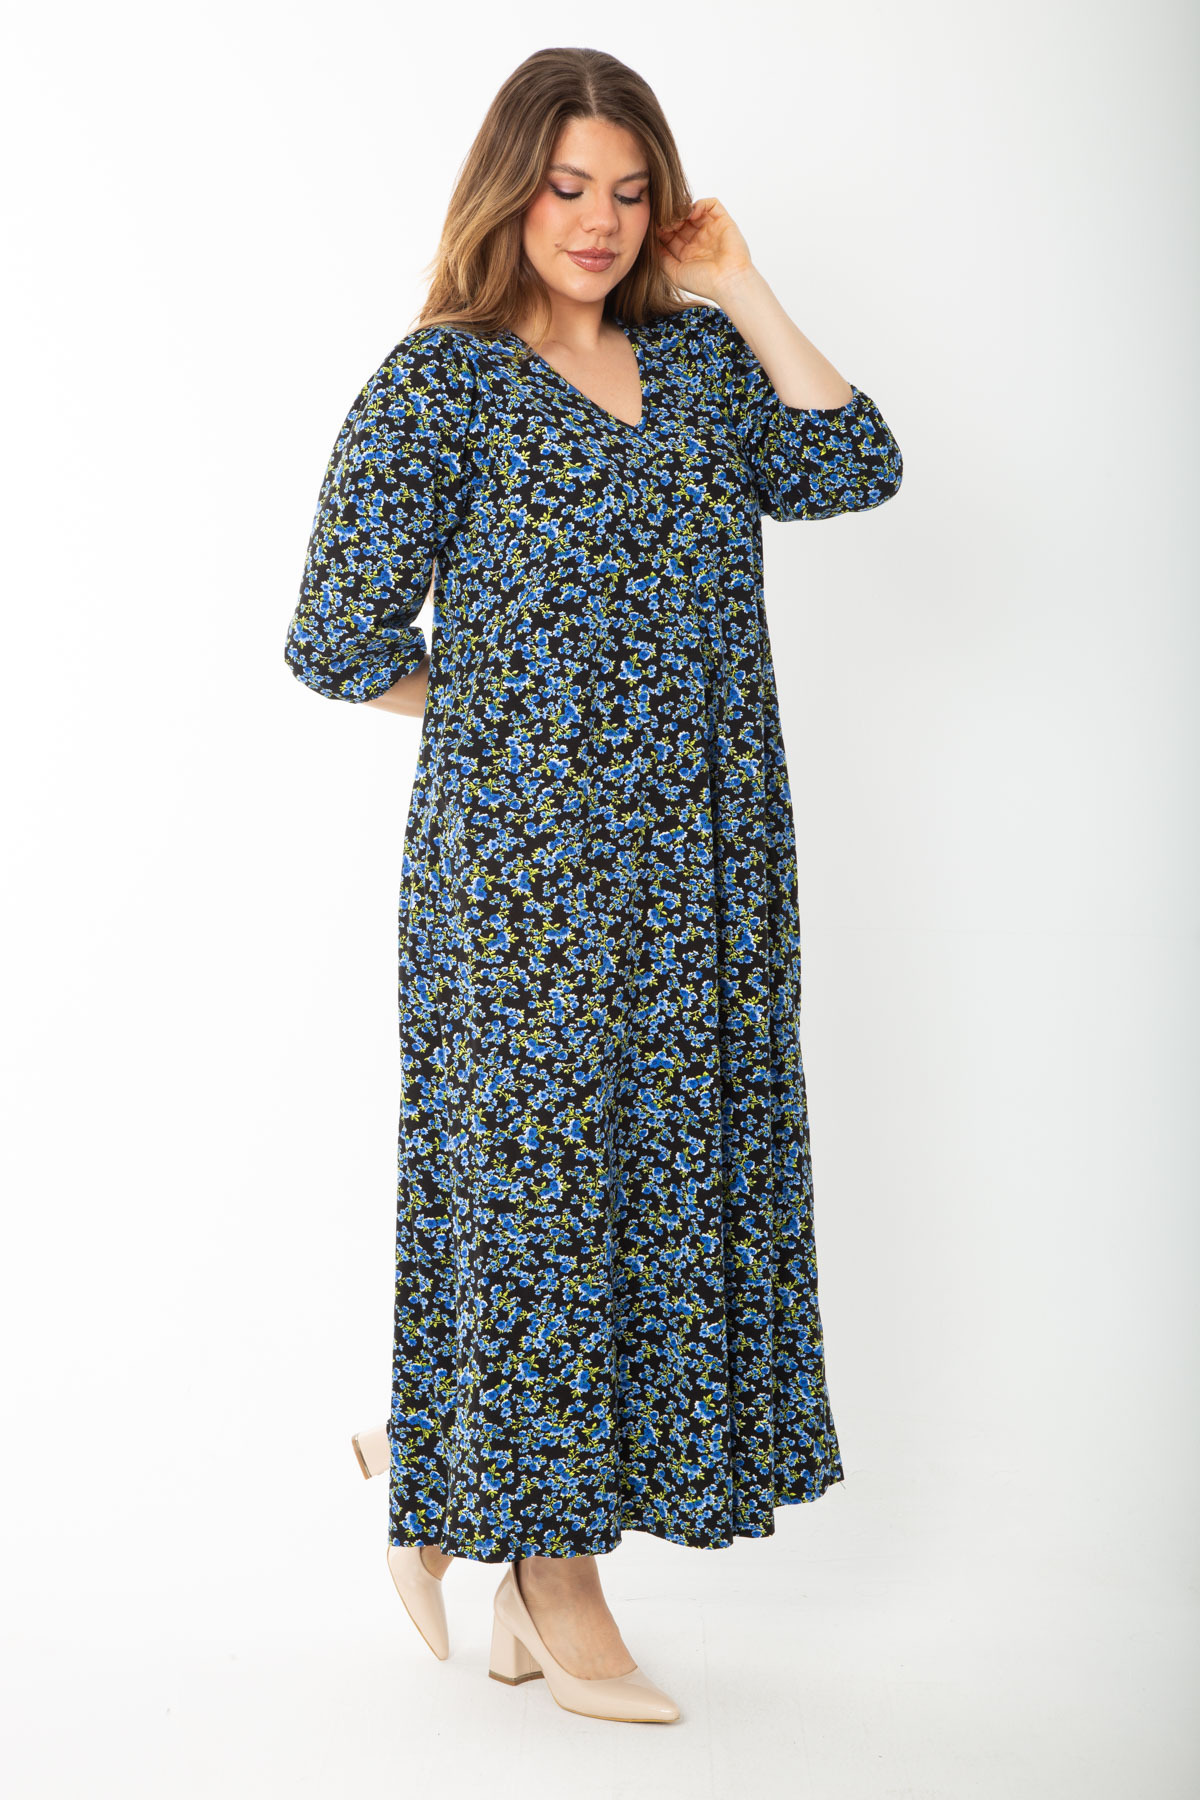 Şans Women's Plus Size Blue V-Neck A Front Pleated Elastic Detailed Dress